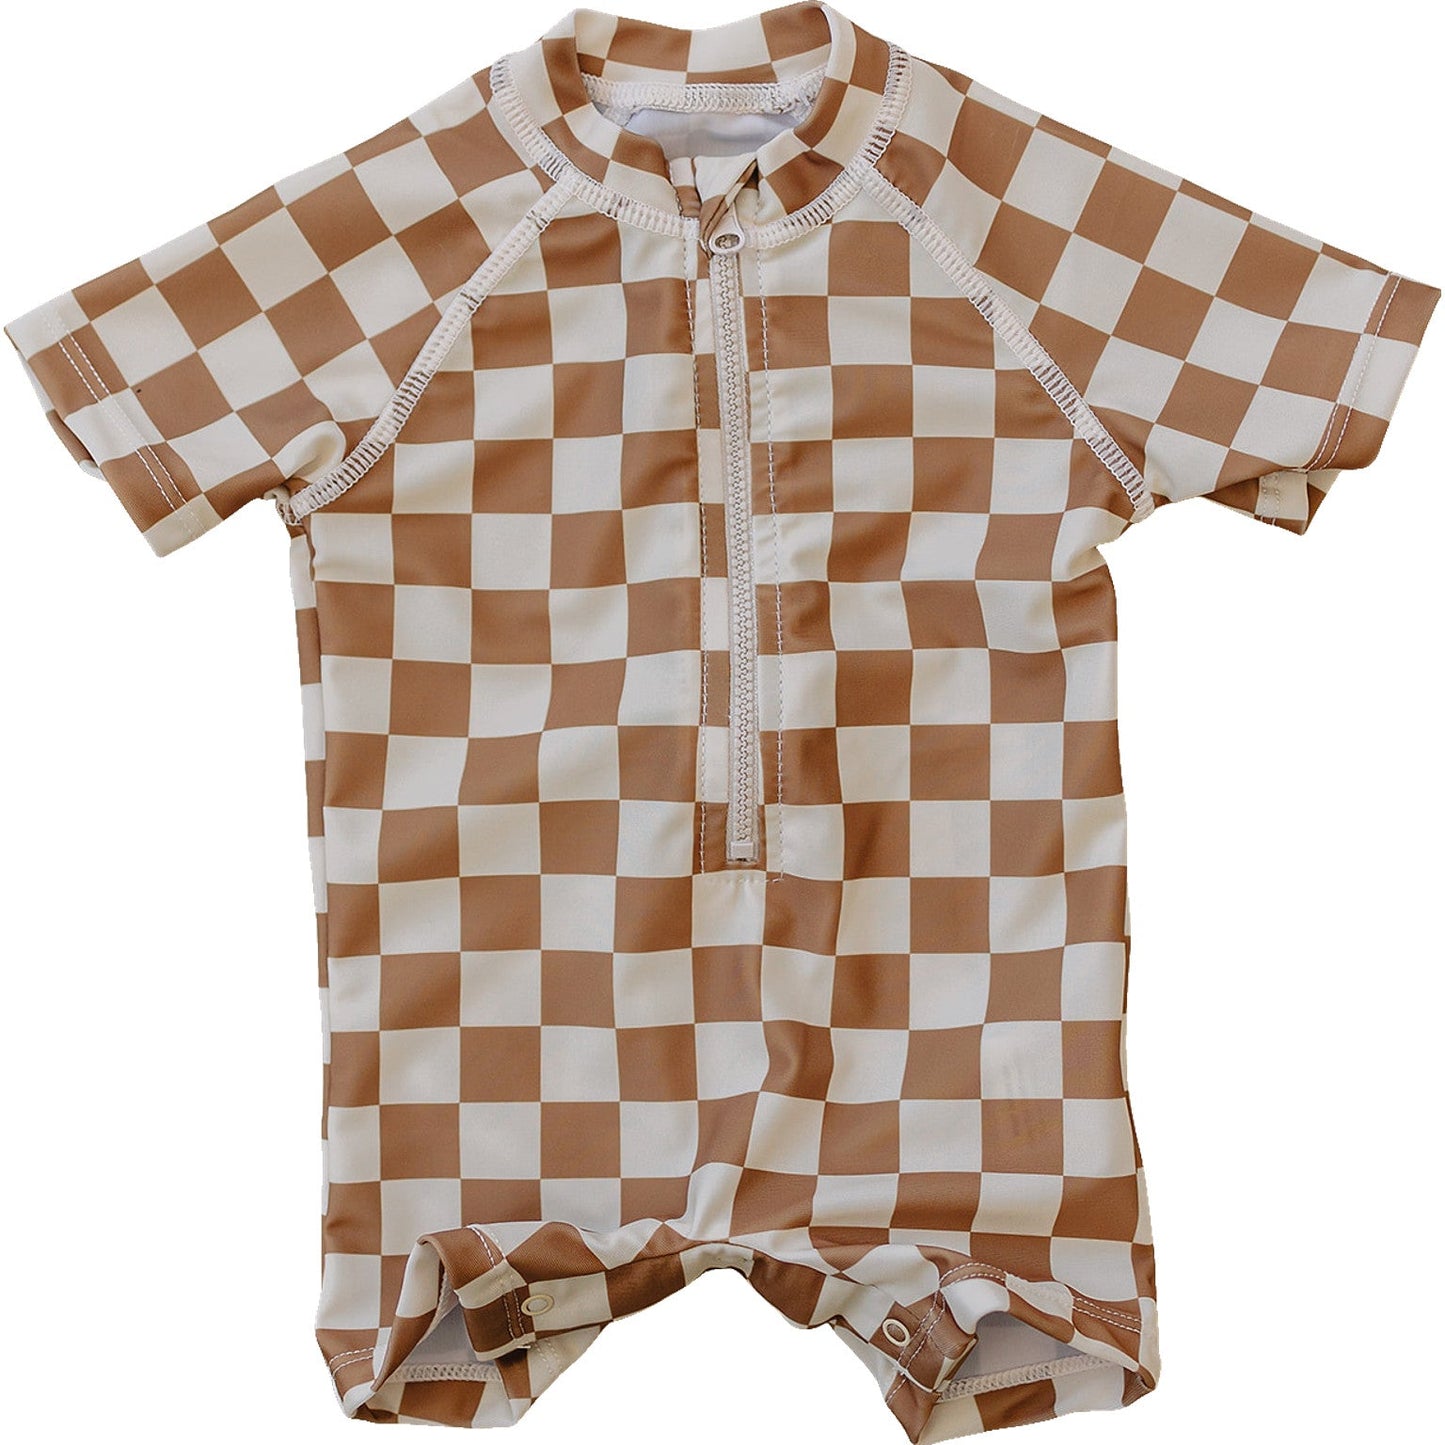 Mebie Baby Checkered Swim Suit - Rust